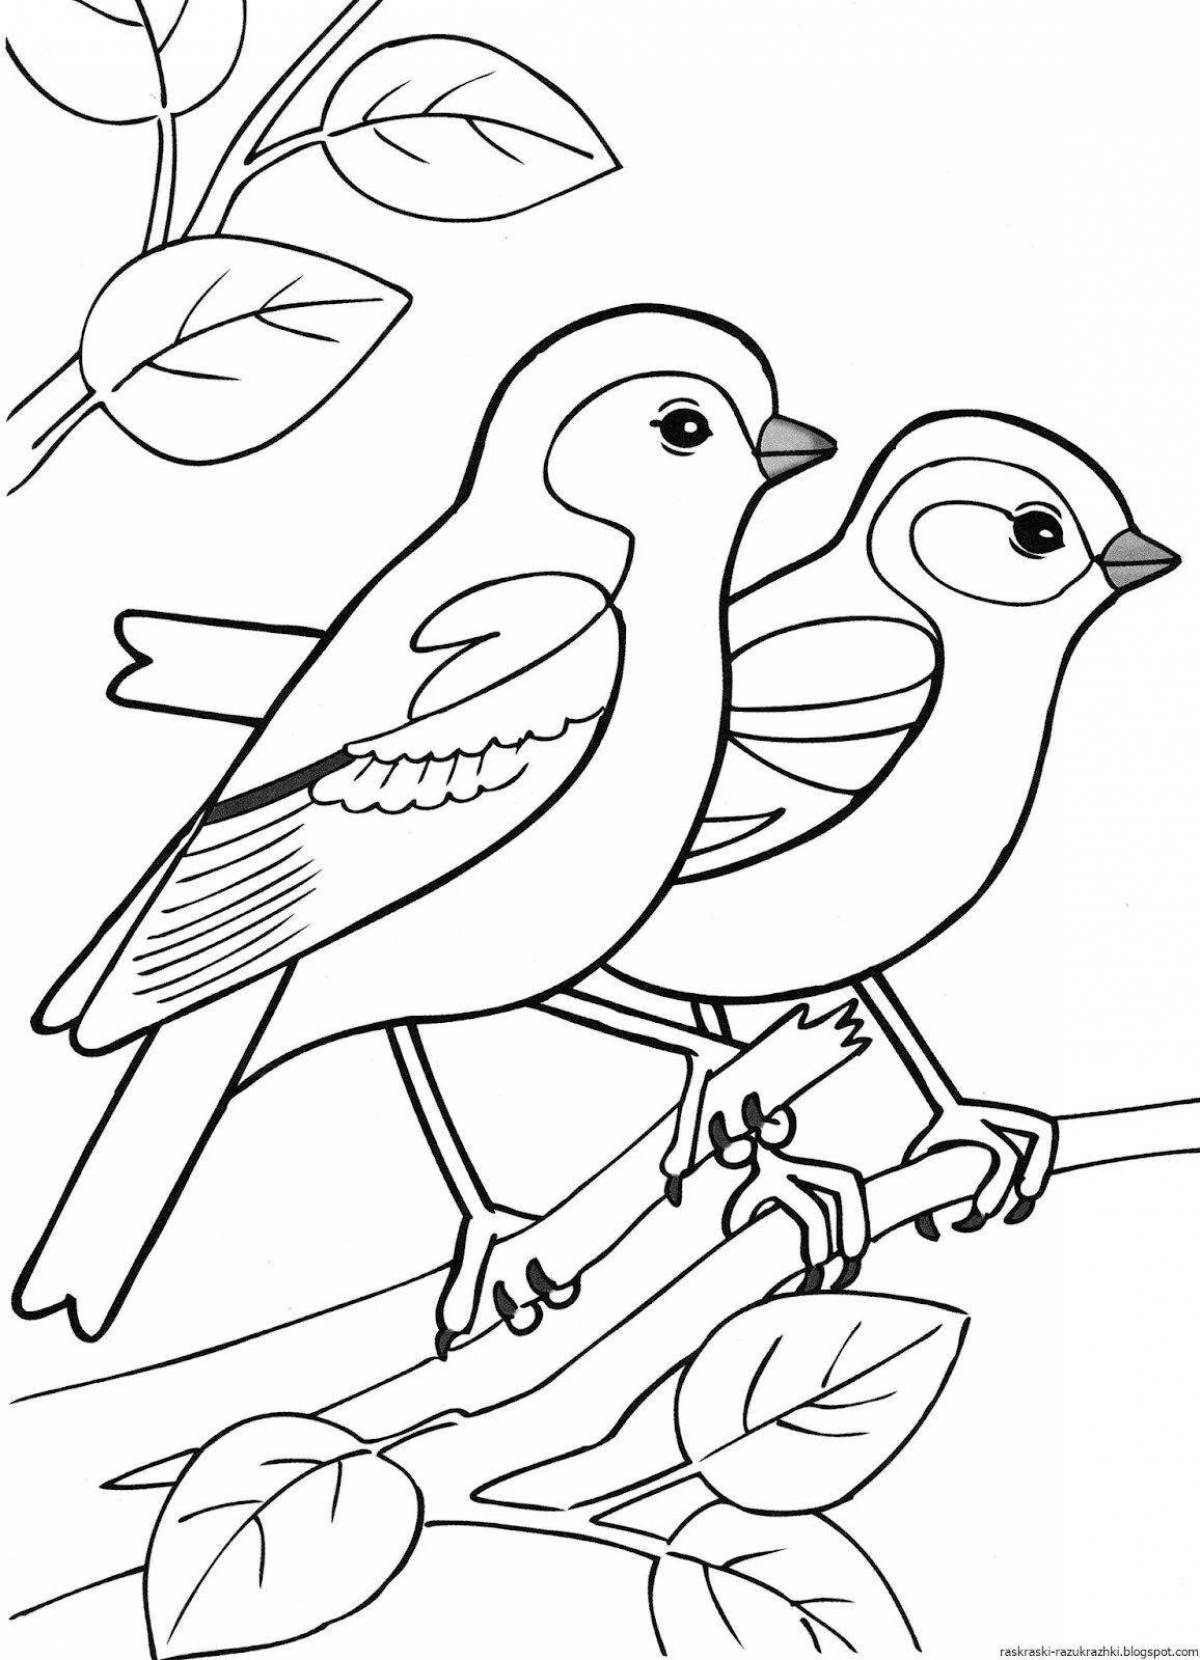 Великолепные раскраски перелетных птиц для детей 6-7 лет